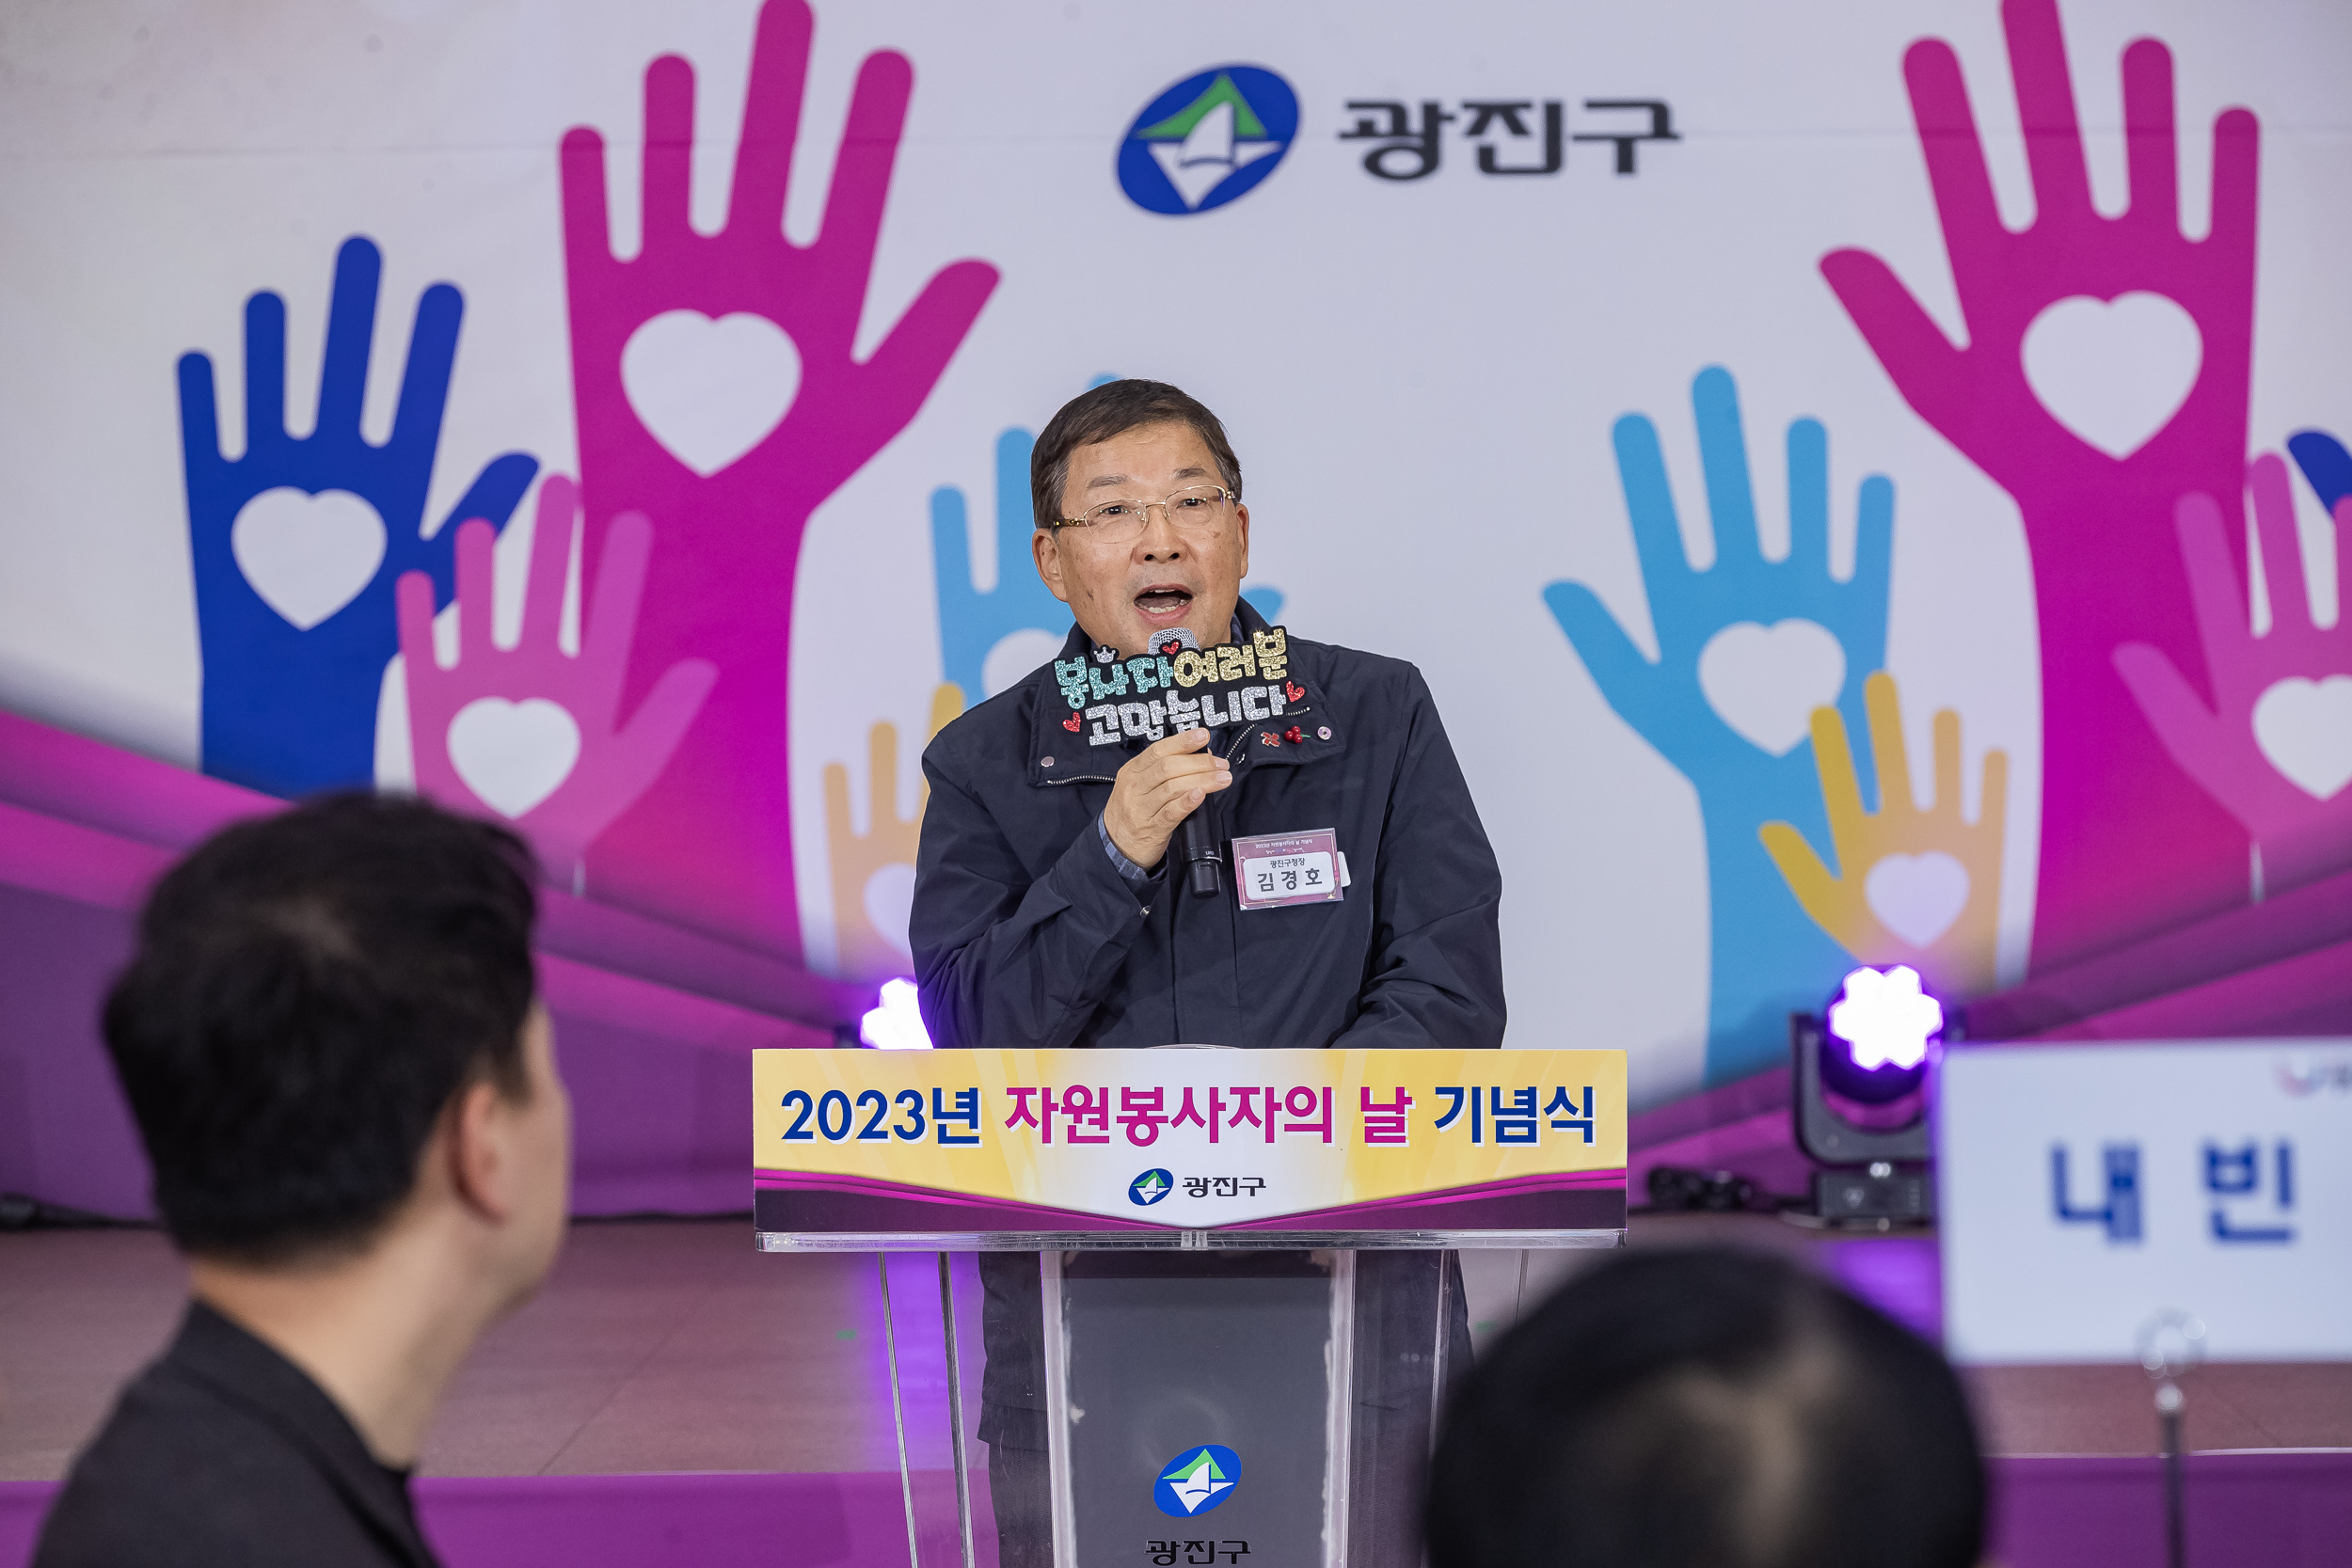 지난해 12월 ‘자원봉사자의 날’ 기념식에 참석한 김경호 광진구청장. 광진구 제공